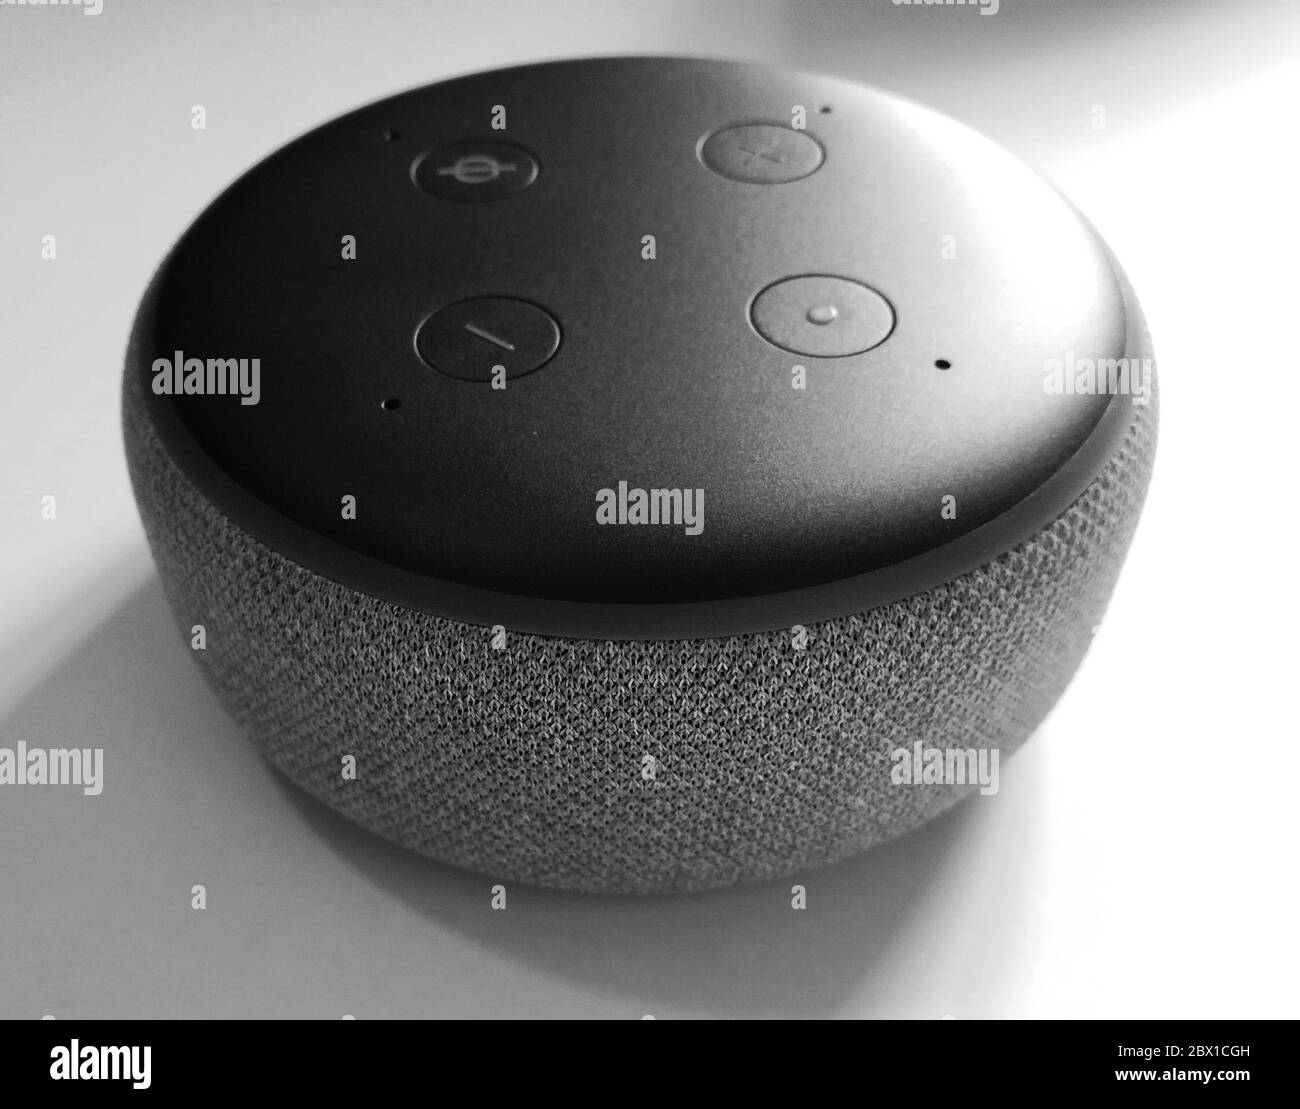 New york / USA - 5 febbraio 2020: Amazon Echo Dot Black 3a generazione - riconoscimento vocale, isolato su bianco backround - altoparlante intelligente con Alexa assistente Foto Stock